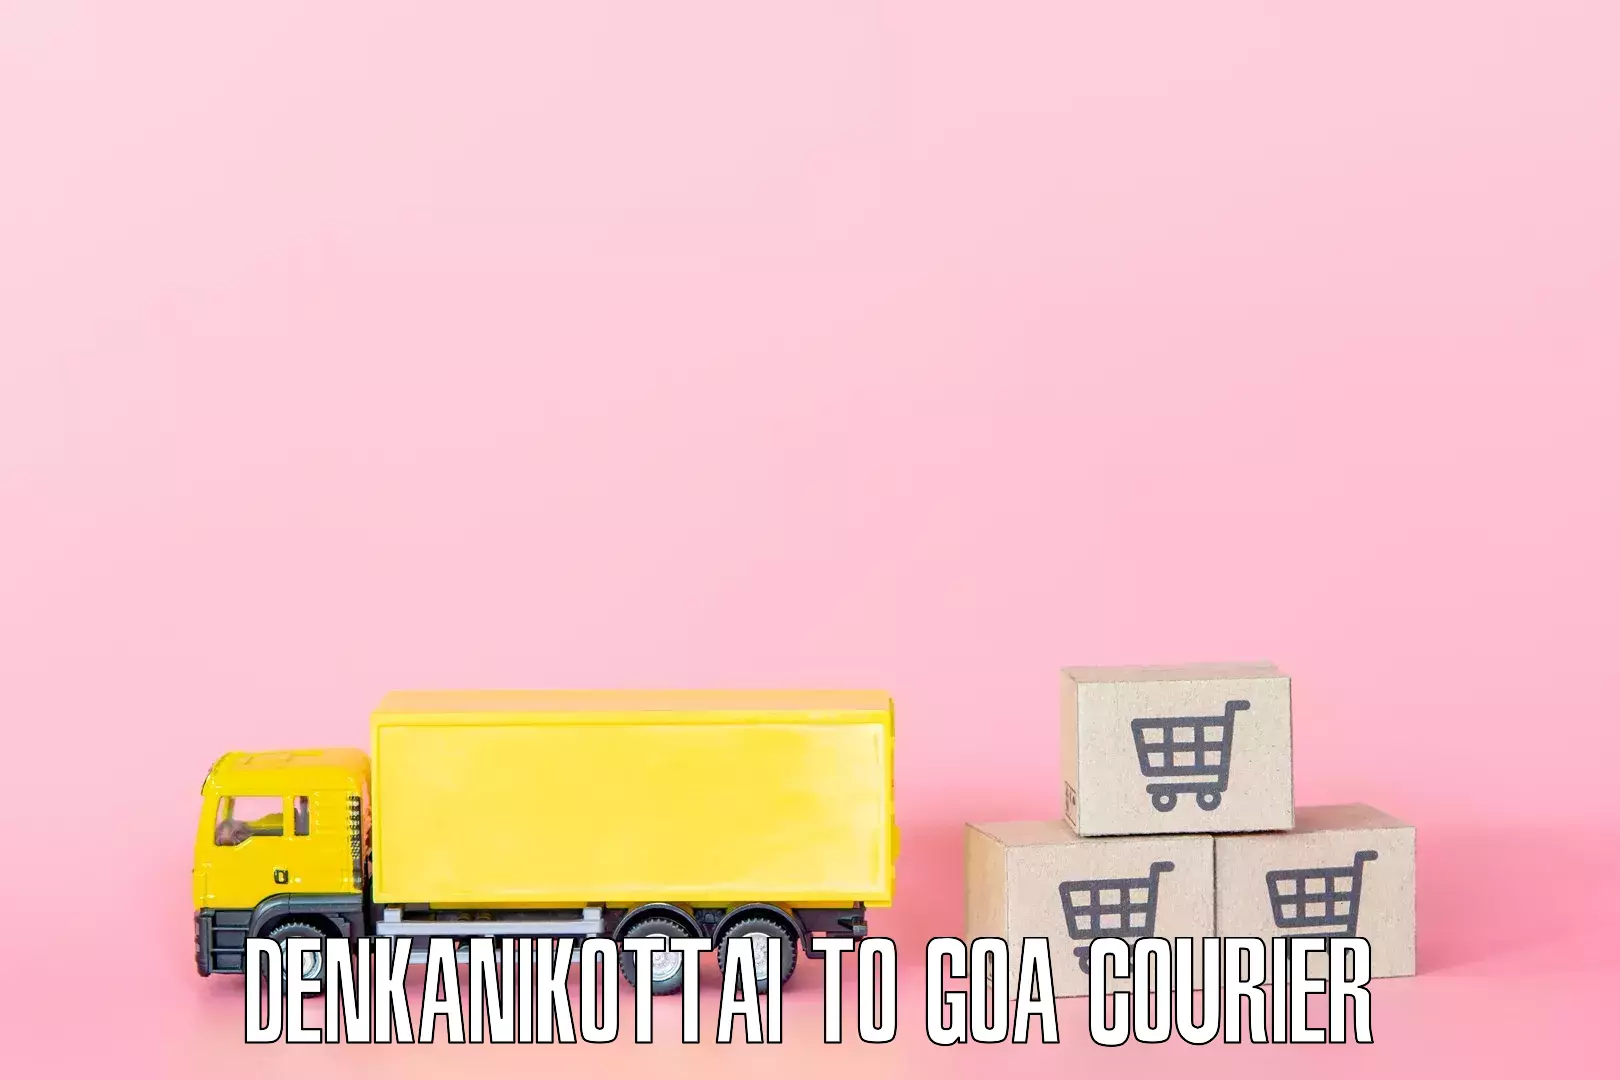 Furniture handling services Denkanikottai to Goa